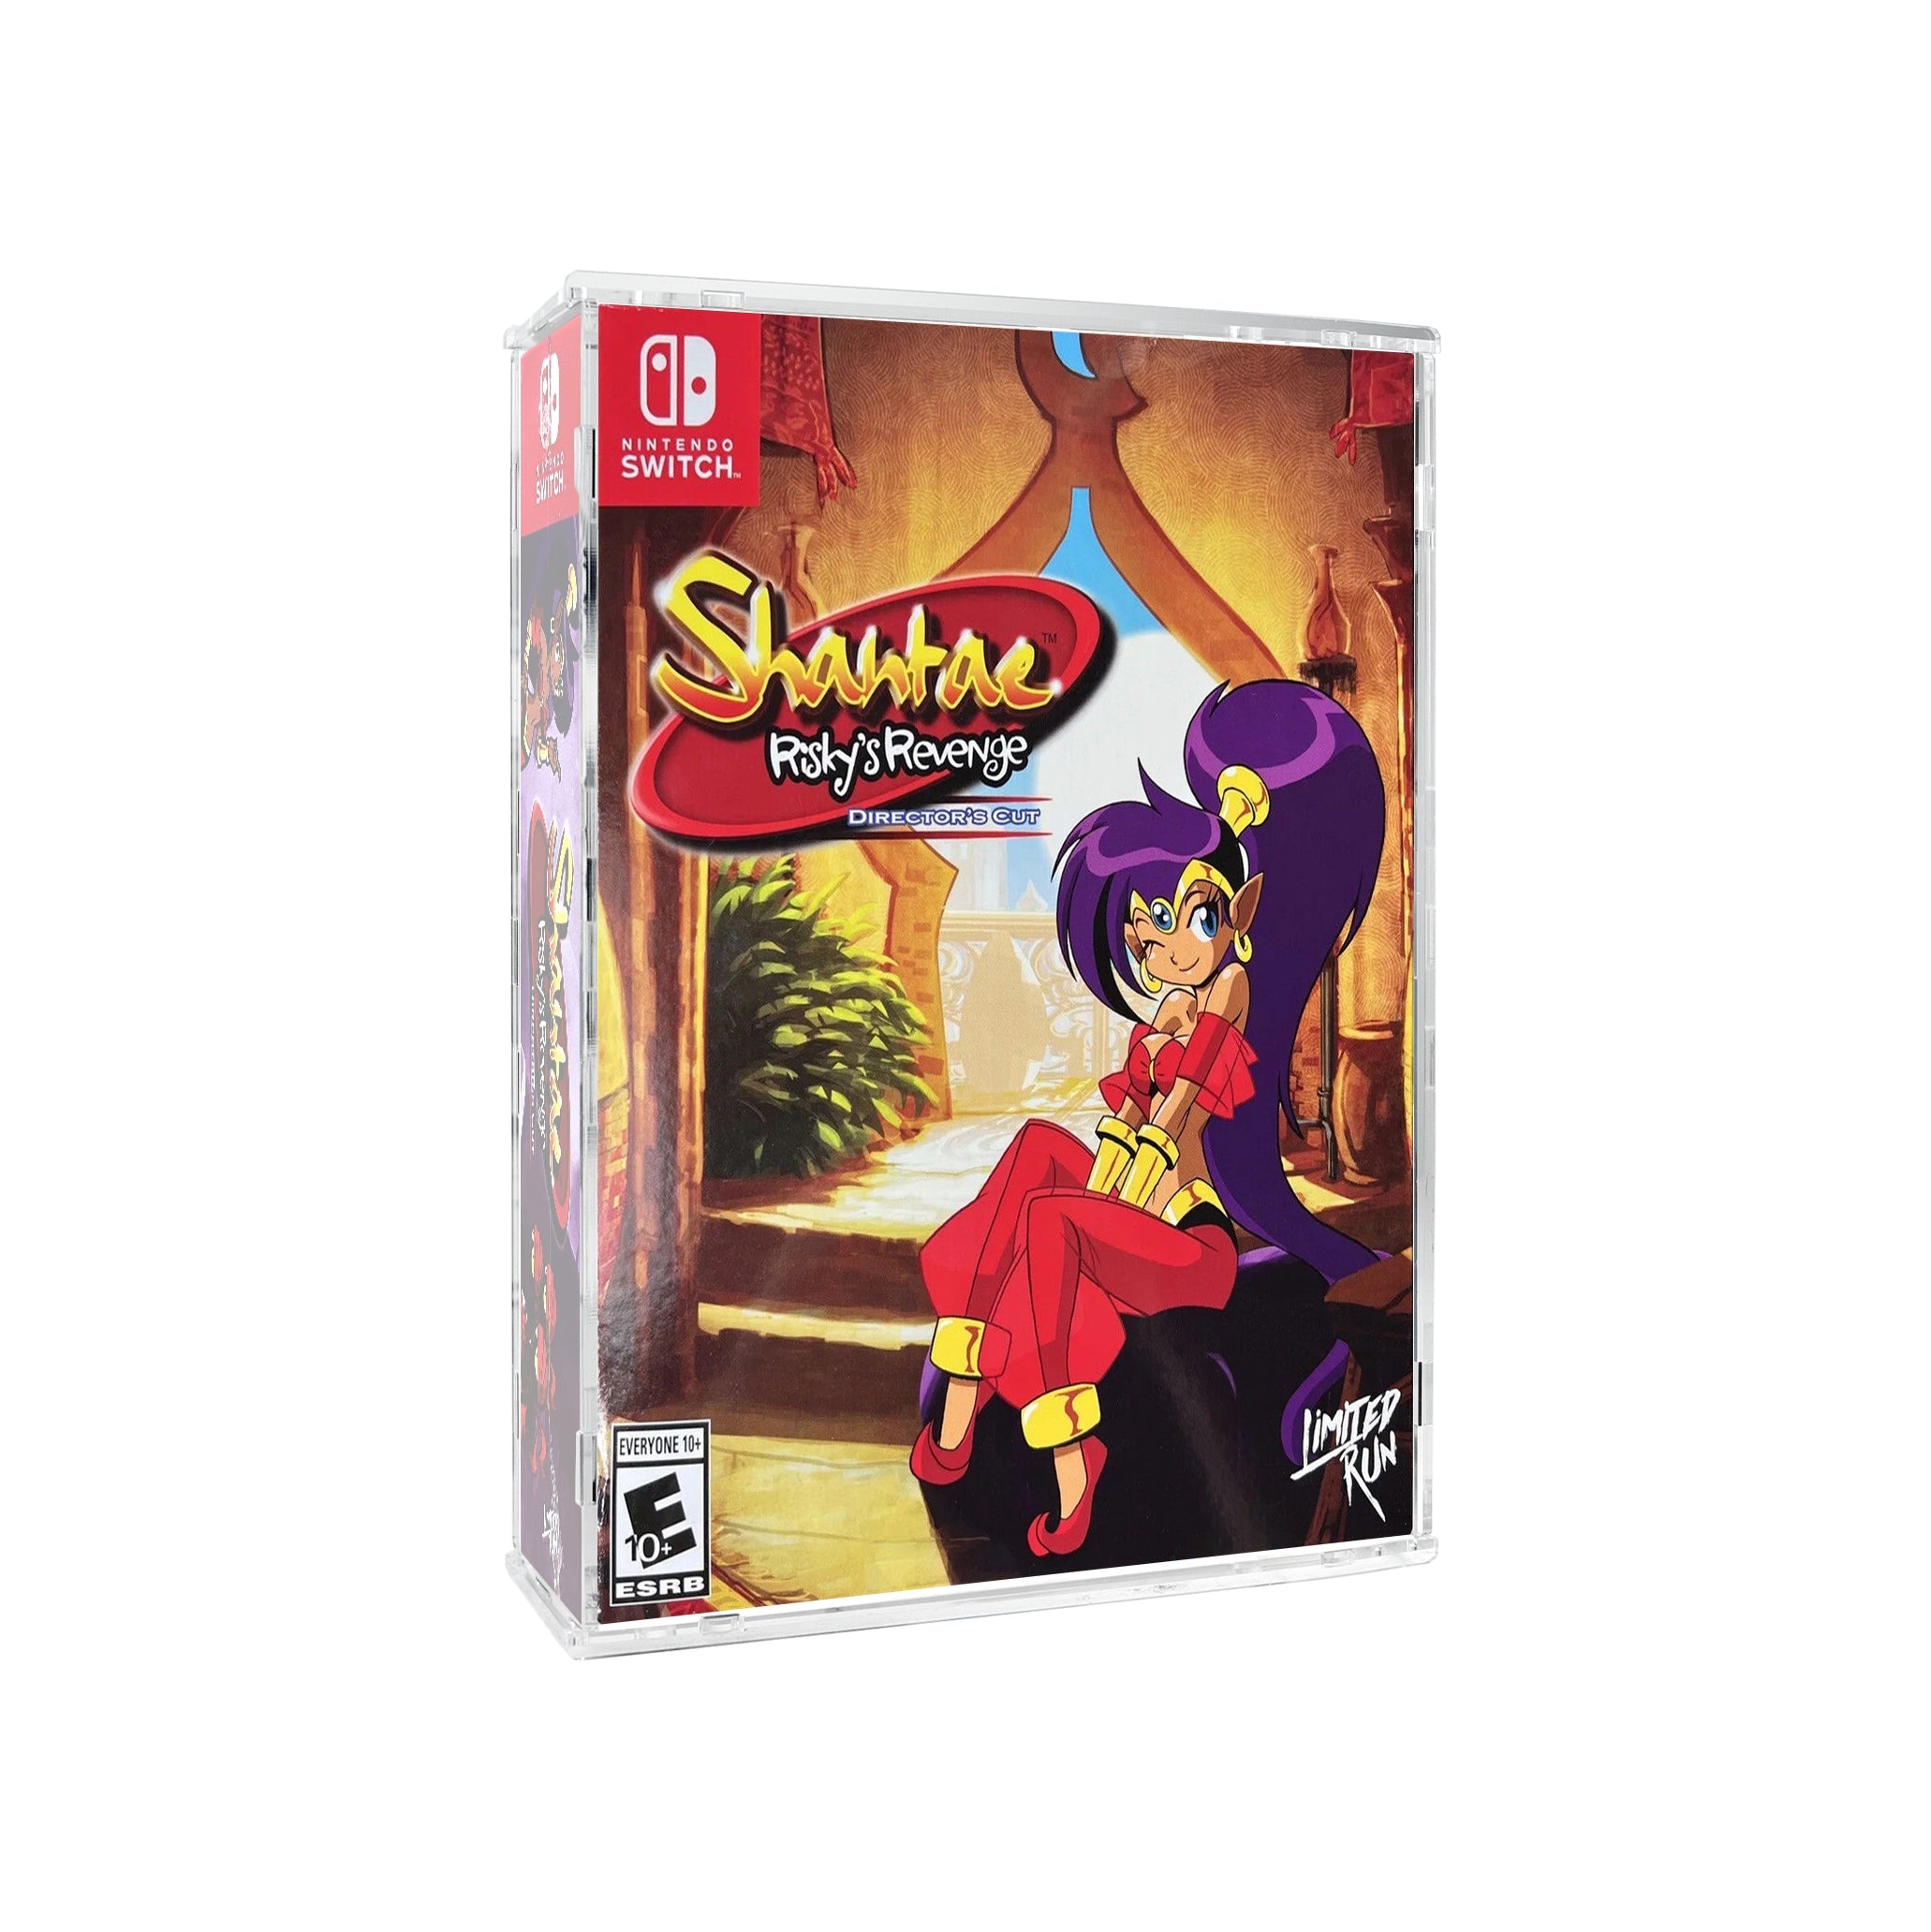 Protector para Shantae™ Risky's Revenge Collectors - Limited Run-acrilico-exhibidor-caja-case-Decolecto